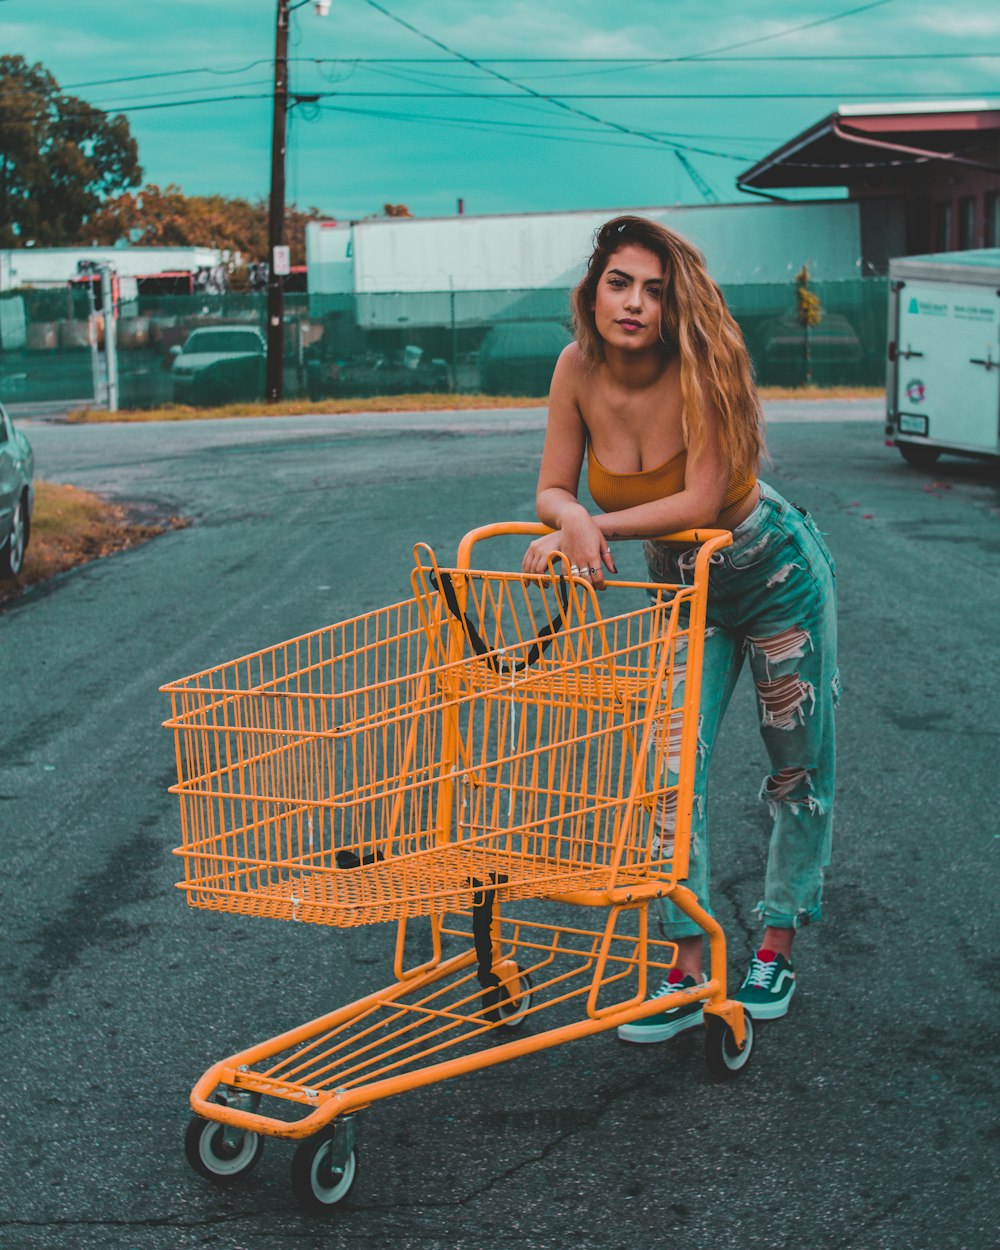 Frau lehnt sich an gelben Einkaufswagen und steht tagsüber auf Betonpflaster